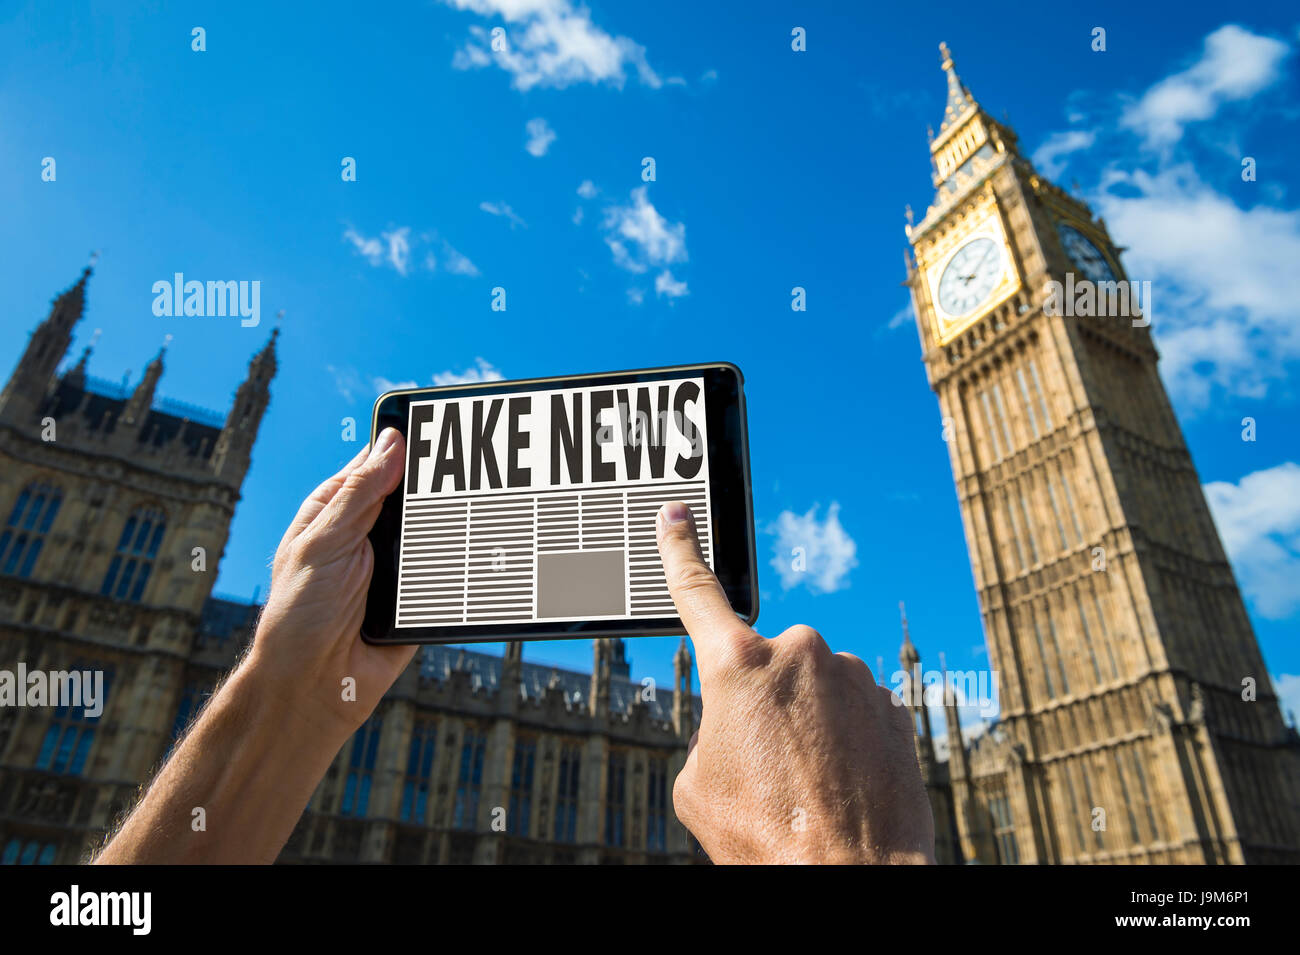 Reader Scrollen durch gefälschte Nachrichten Geschichten auf seinem Tablettcomputer vor den Houses of Parliament, Westminster Palace in London, England Stockfoto